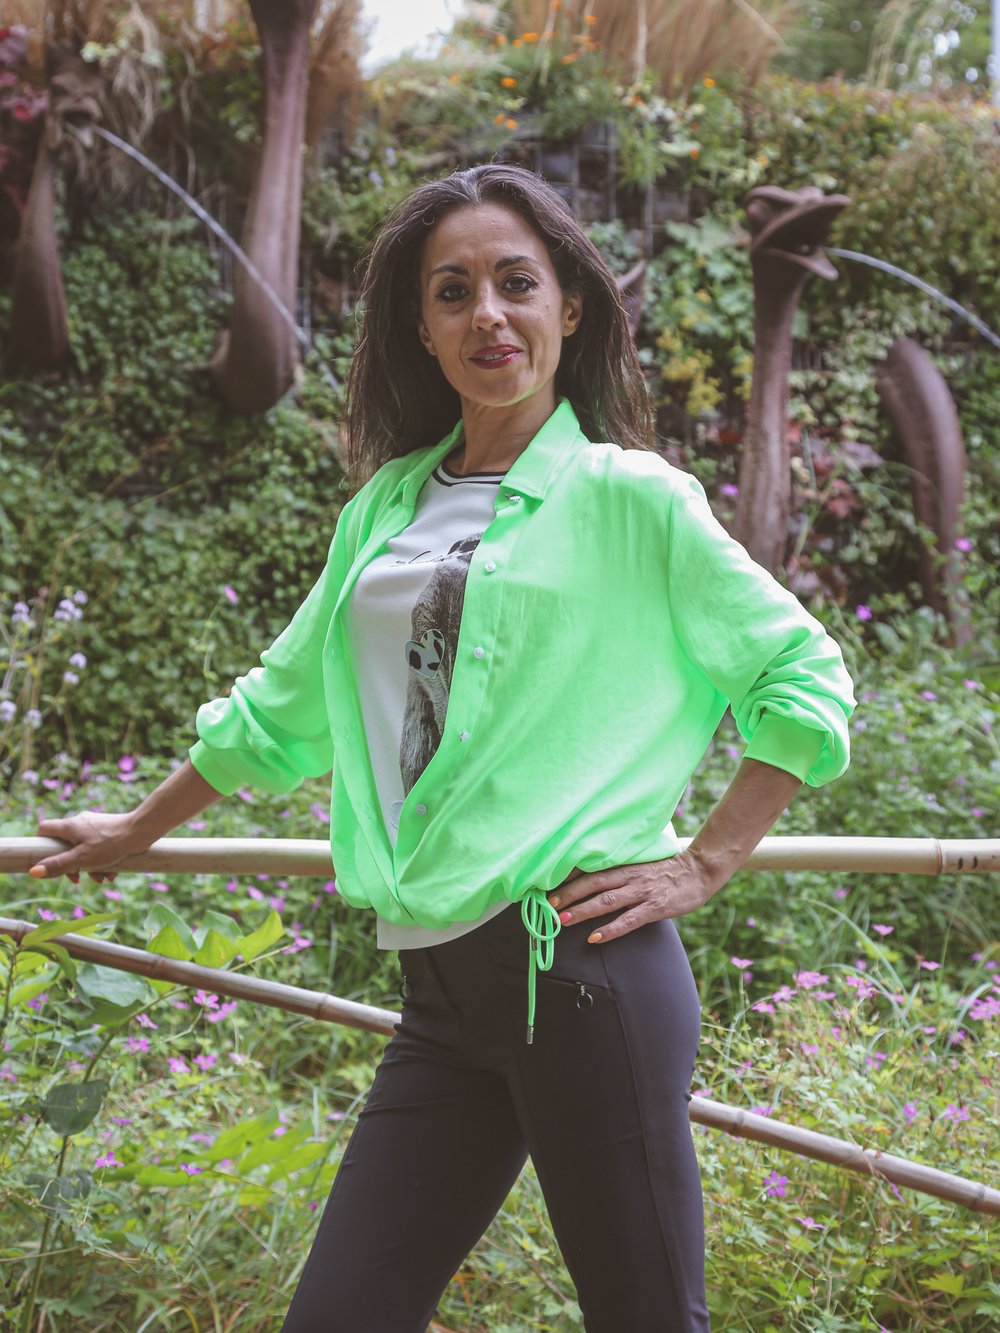 Chemise à cordon vert fluo MARC CAIN — Vetement original femme fashion,  tenue mode chic haut de gamme